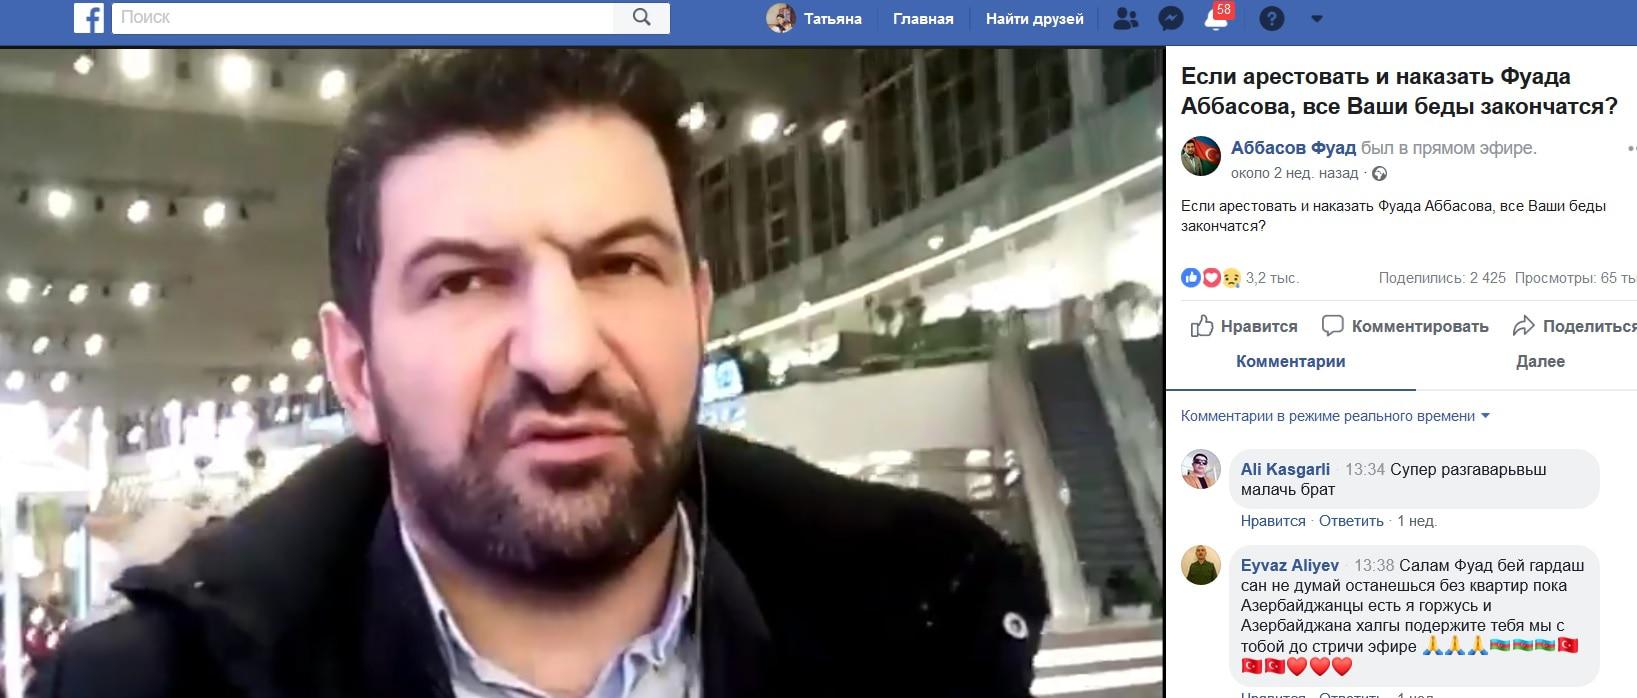 Скриншот видеозаписи, размещенной в аккаунте Фуада Аббасова в соцсети Facebook https://www.facebook.com/fuadmalikogluabbasov/videos/10210605094322931/